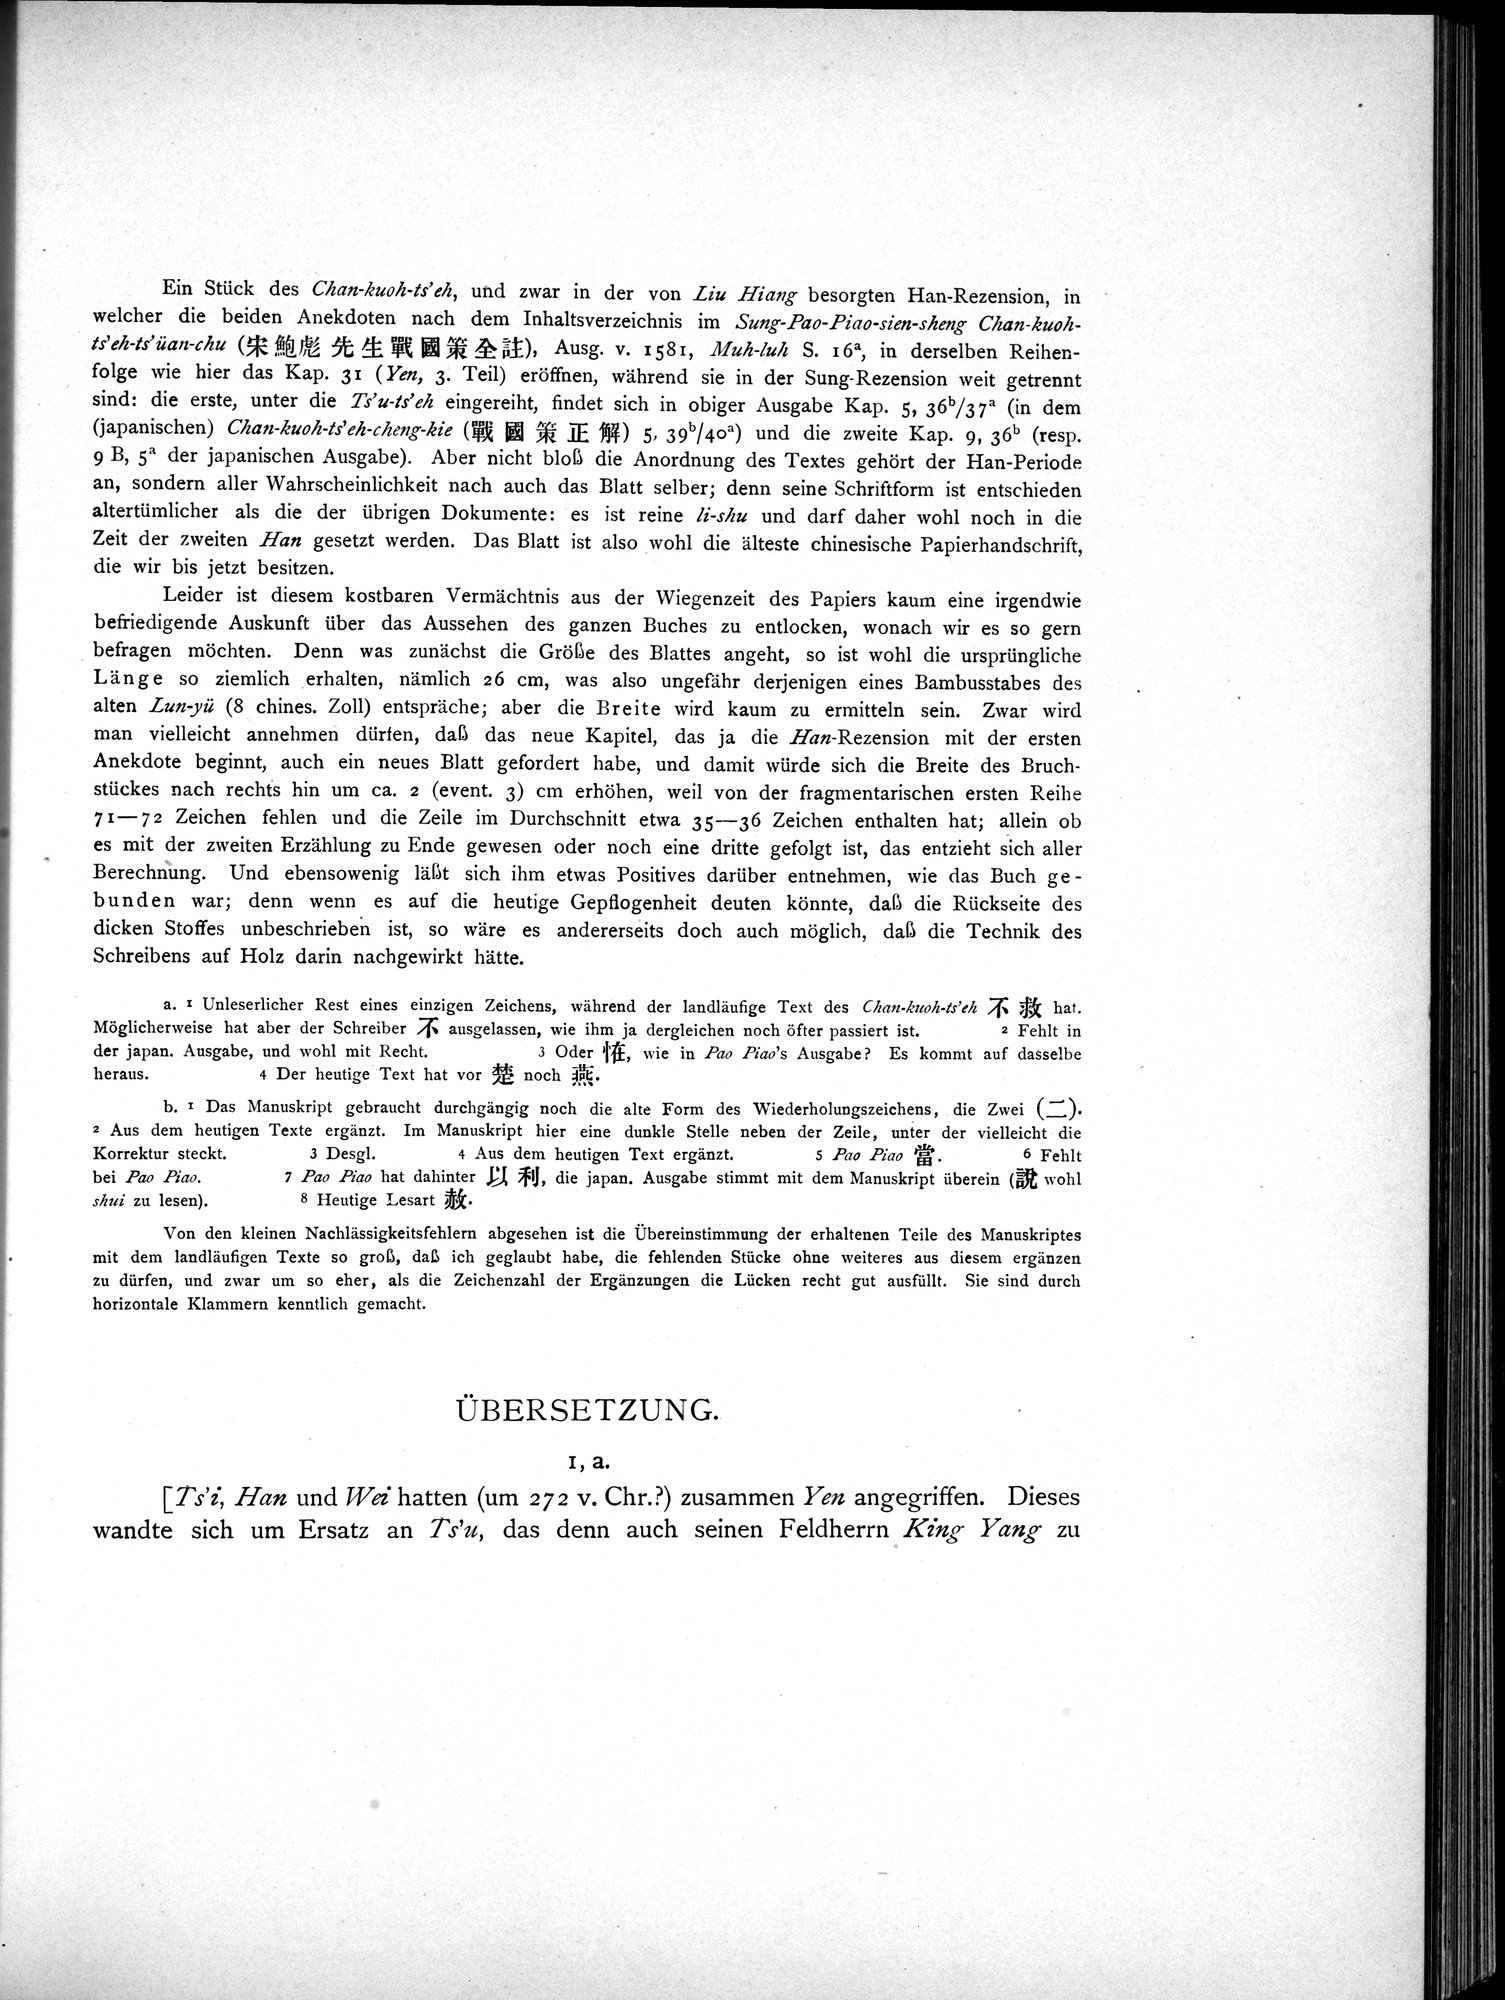 Die Chinesischen Handschriften- und sonstigen Kleinfunde Sven Hedins in Lou-lan : vol.1 / Page 101 (Grayscale High Resolution Image)